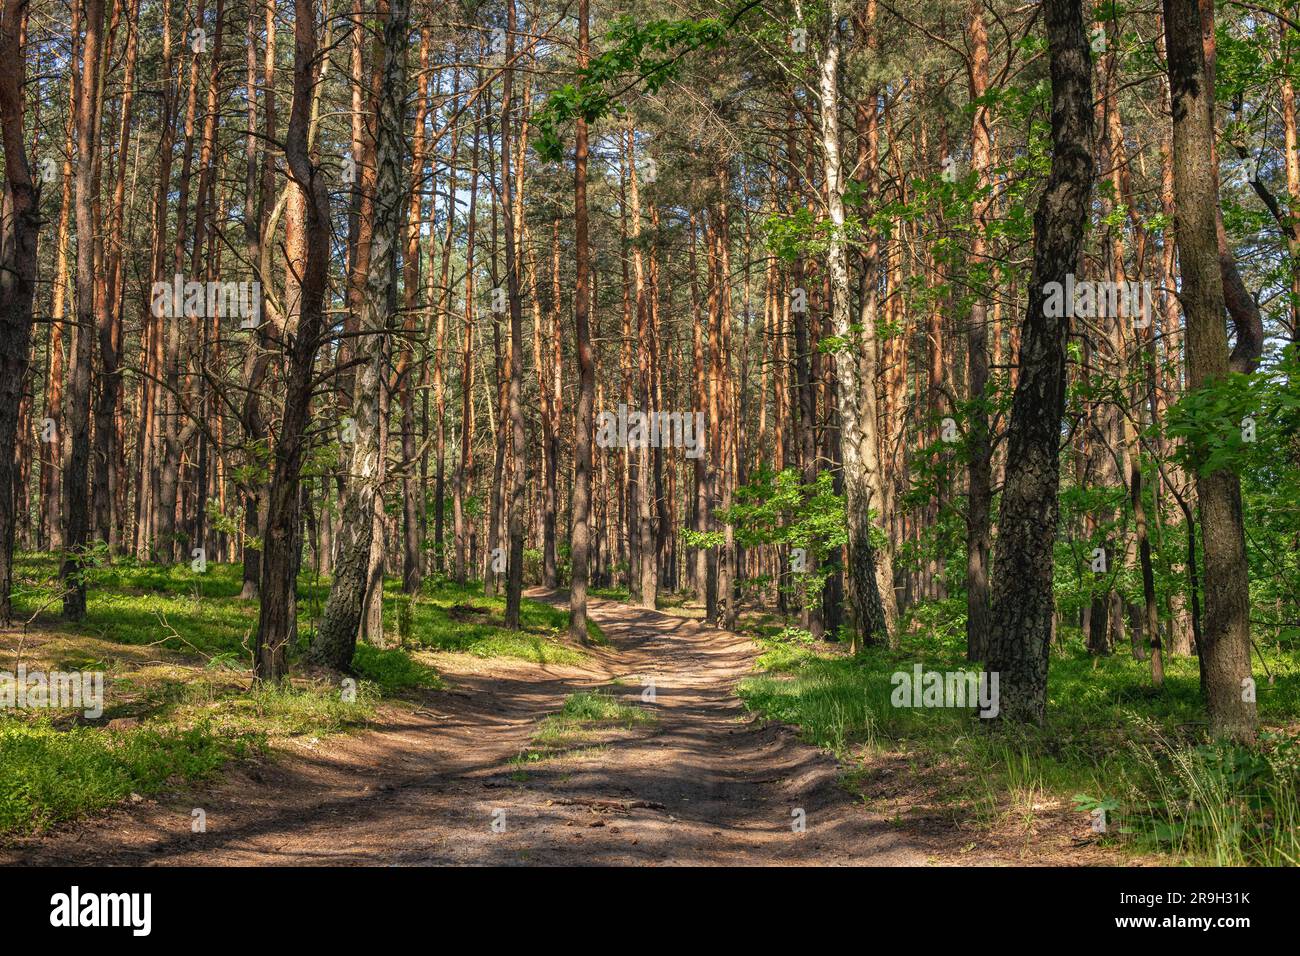 Forêt de pins par une journée ensoleillée d'été. Route forestière. Paysage de l'Europe du Nord. Pologne Mazovia. Banque D'Images